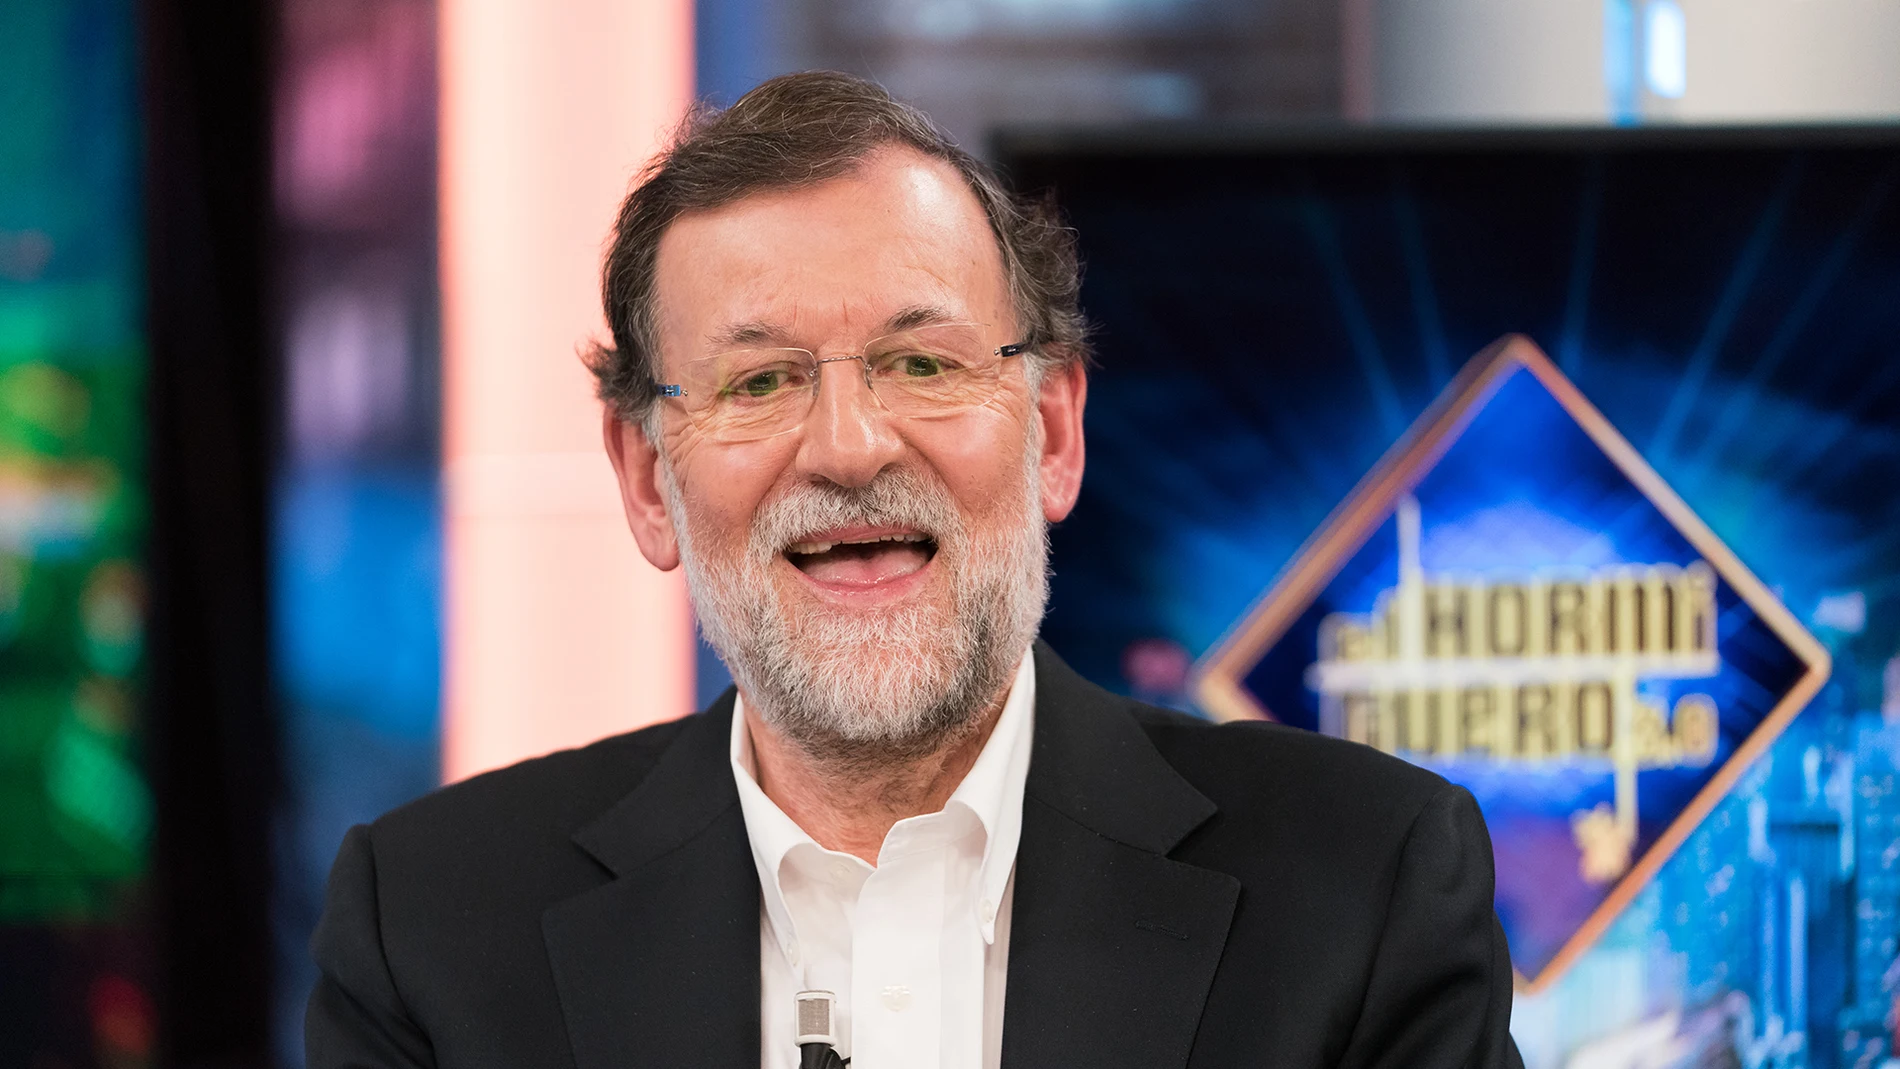 Mariano Rajoy subraya en 'El Hormiguero 3.0' el "honor" y la responsabilidad de ser presidente: "Mira para arriba y ahí sólo está el cielo"